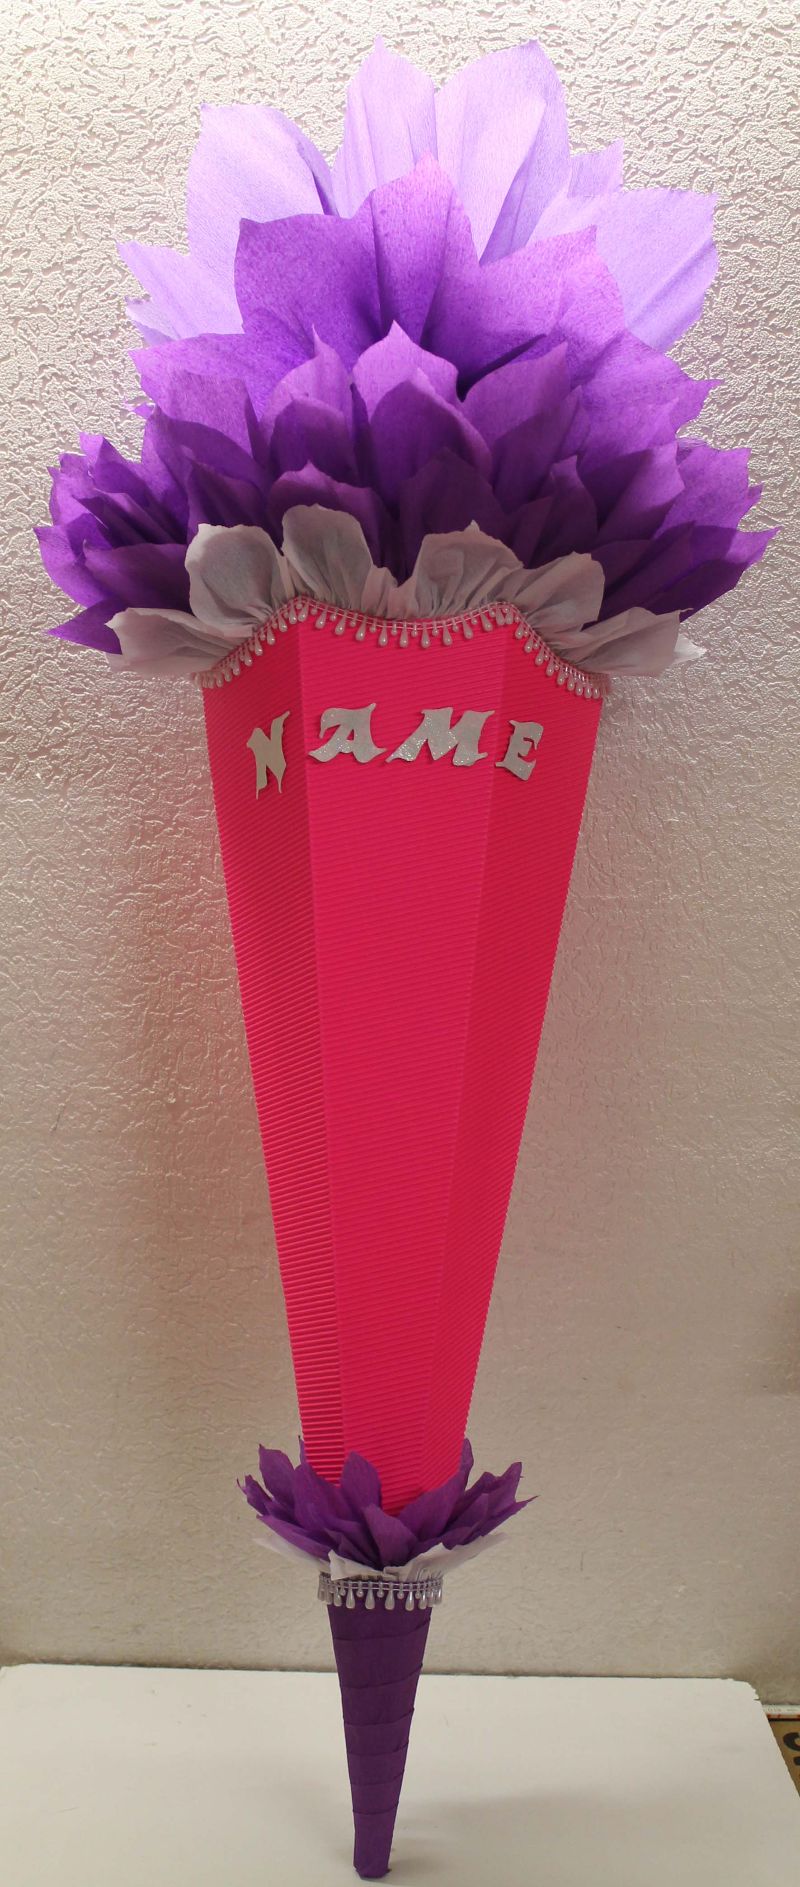  - Schultüte Zuckertüte Rohling zum selbst verzieren Rohling 70 75 80 85 90 100 cm / 1m für Mädchen HANDARBEIT leuchtpink violett lila weiß